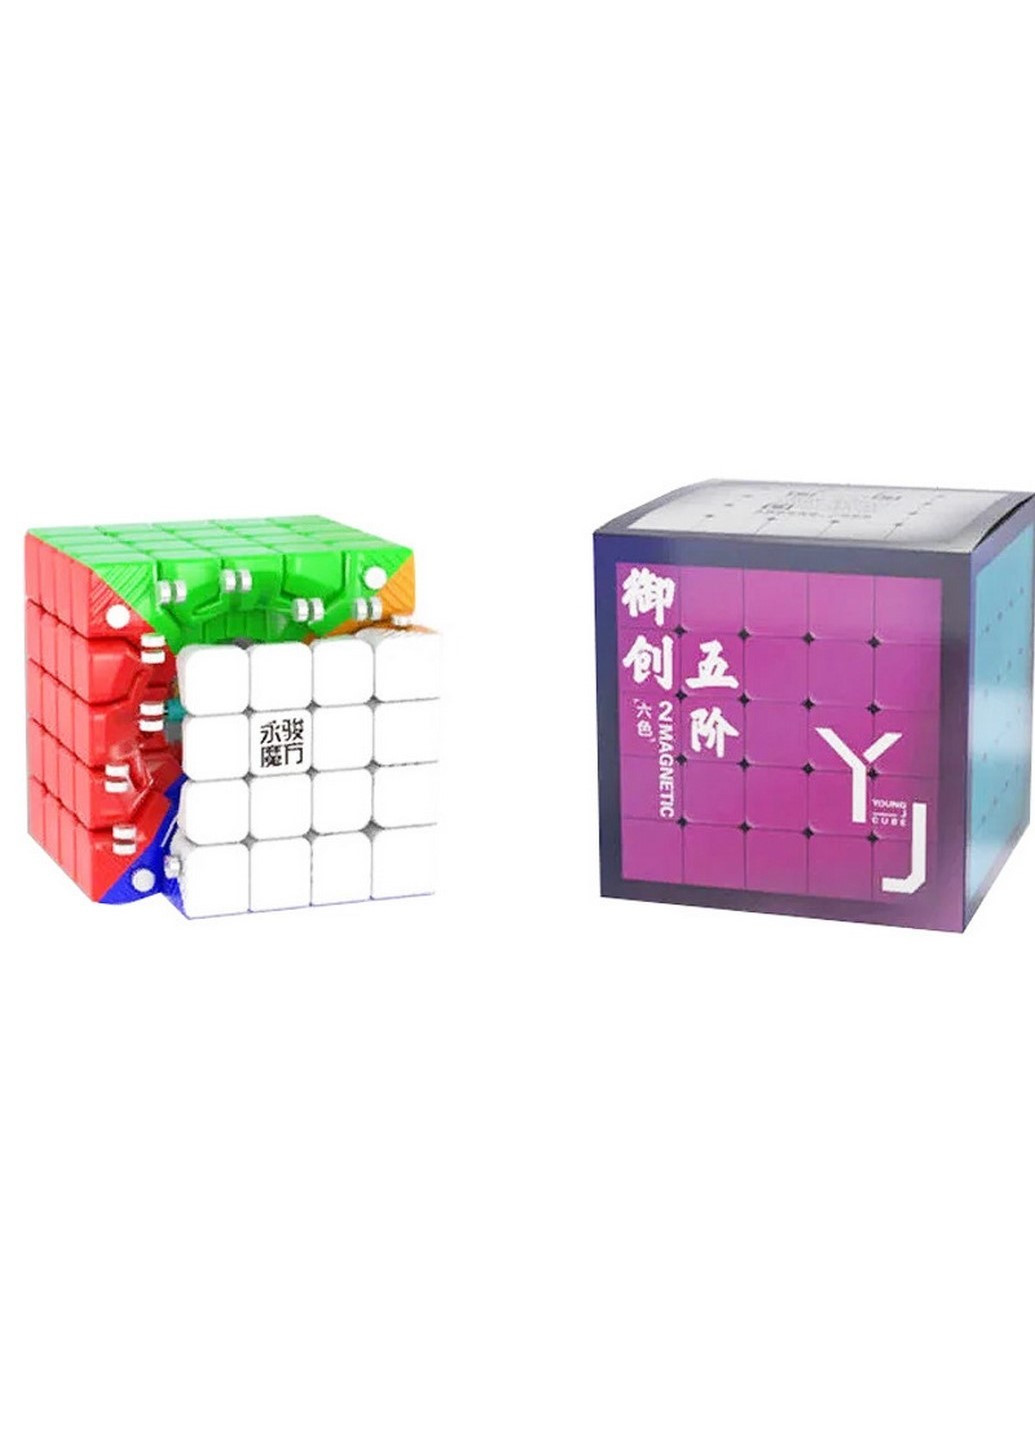 5x5 Yuchuang V2 M stickerless | Кубик 5x5 без наклеек магнитный 8386 YJ (215660646)